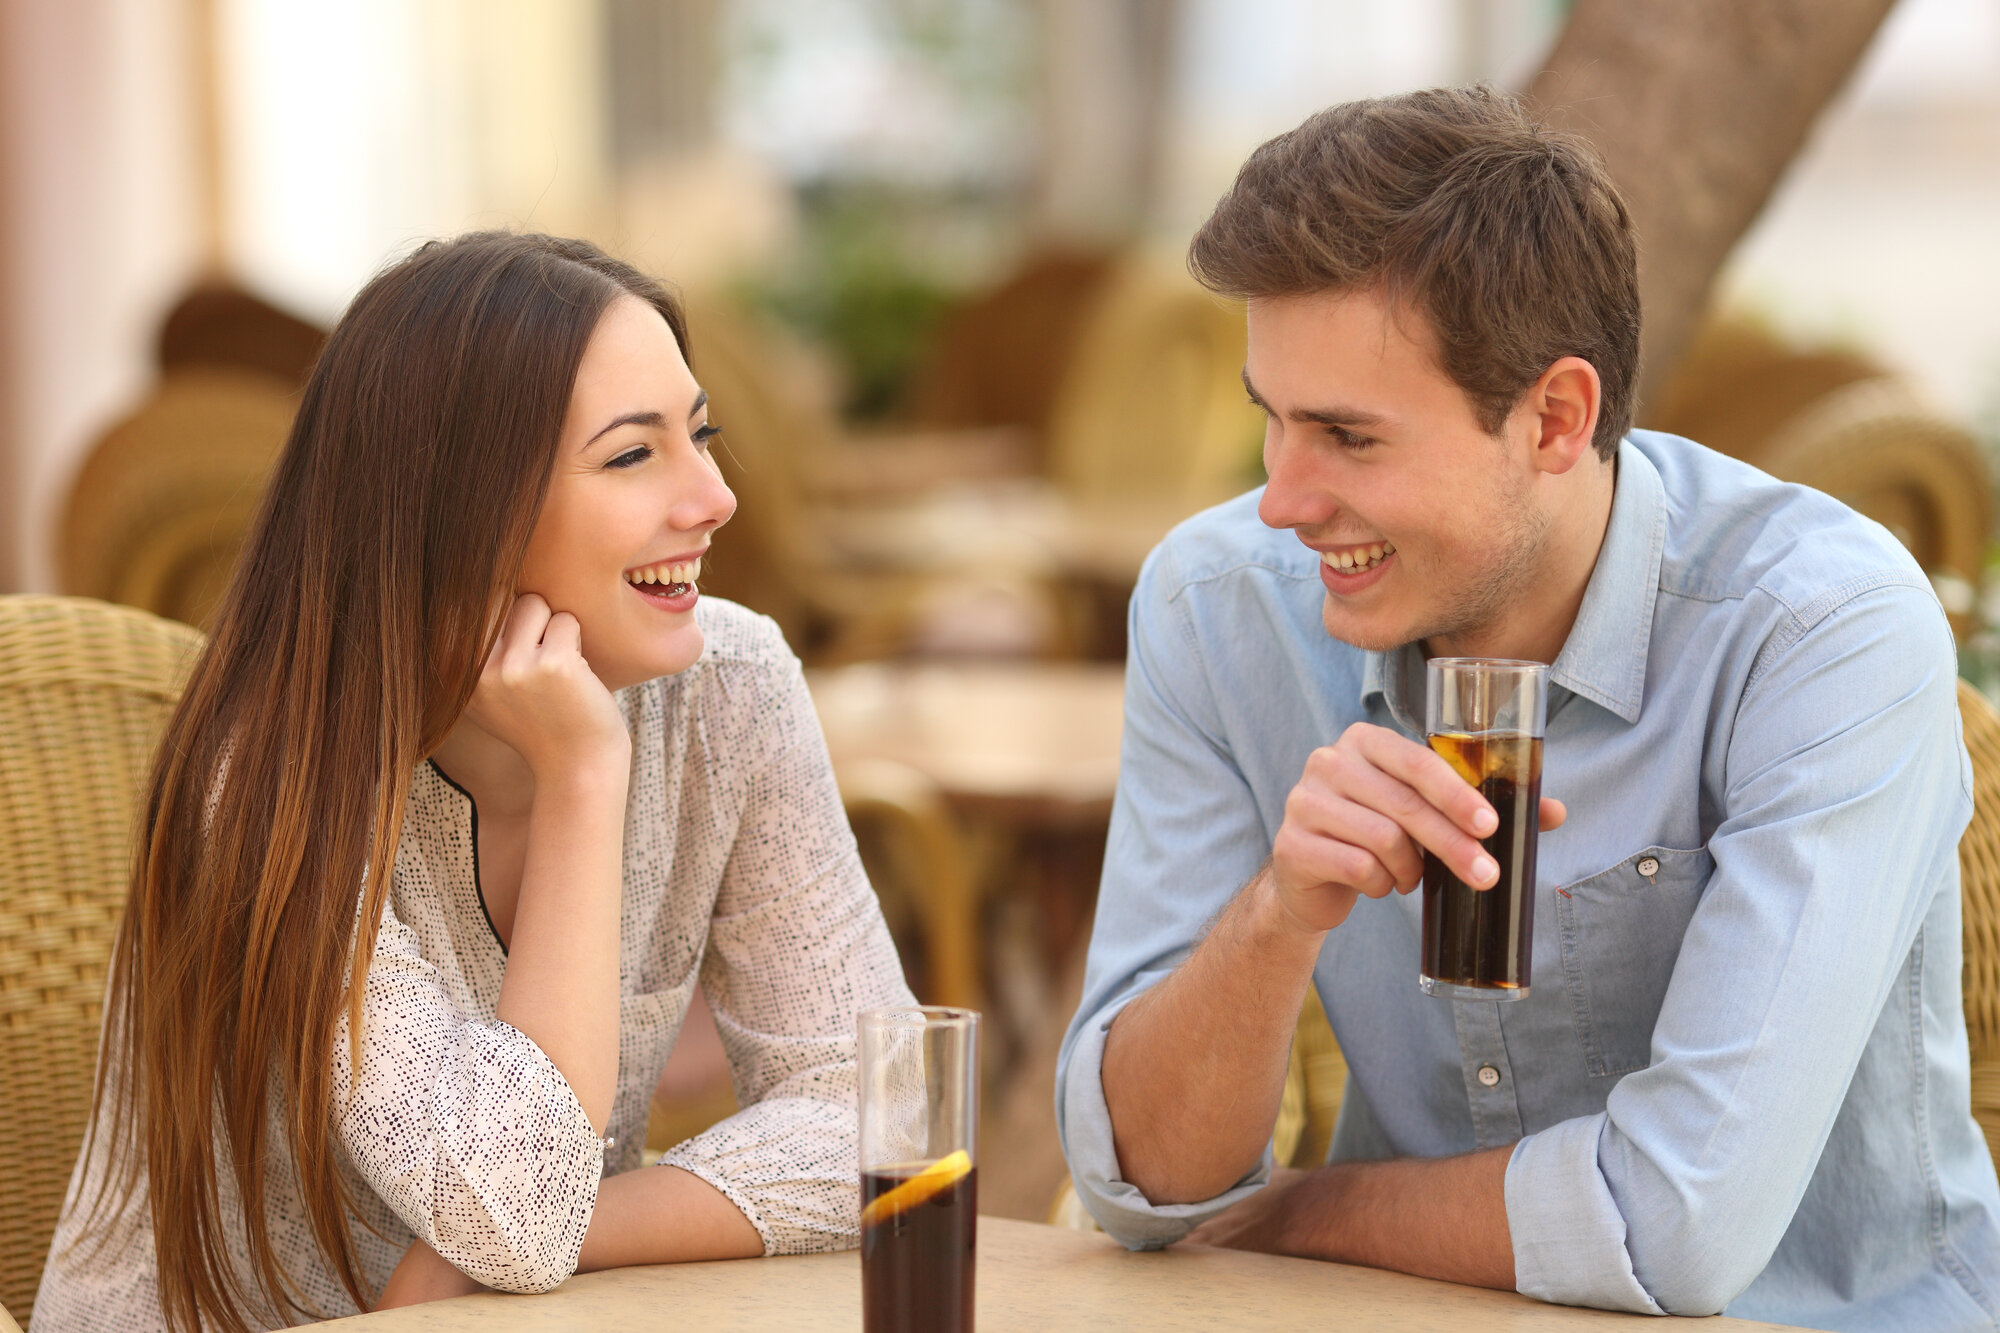 Leave a Lasting Impression Best Dating Tips for men